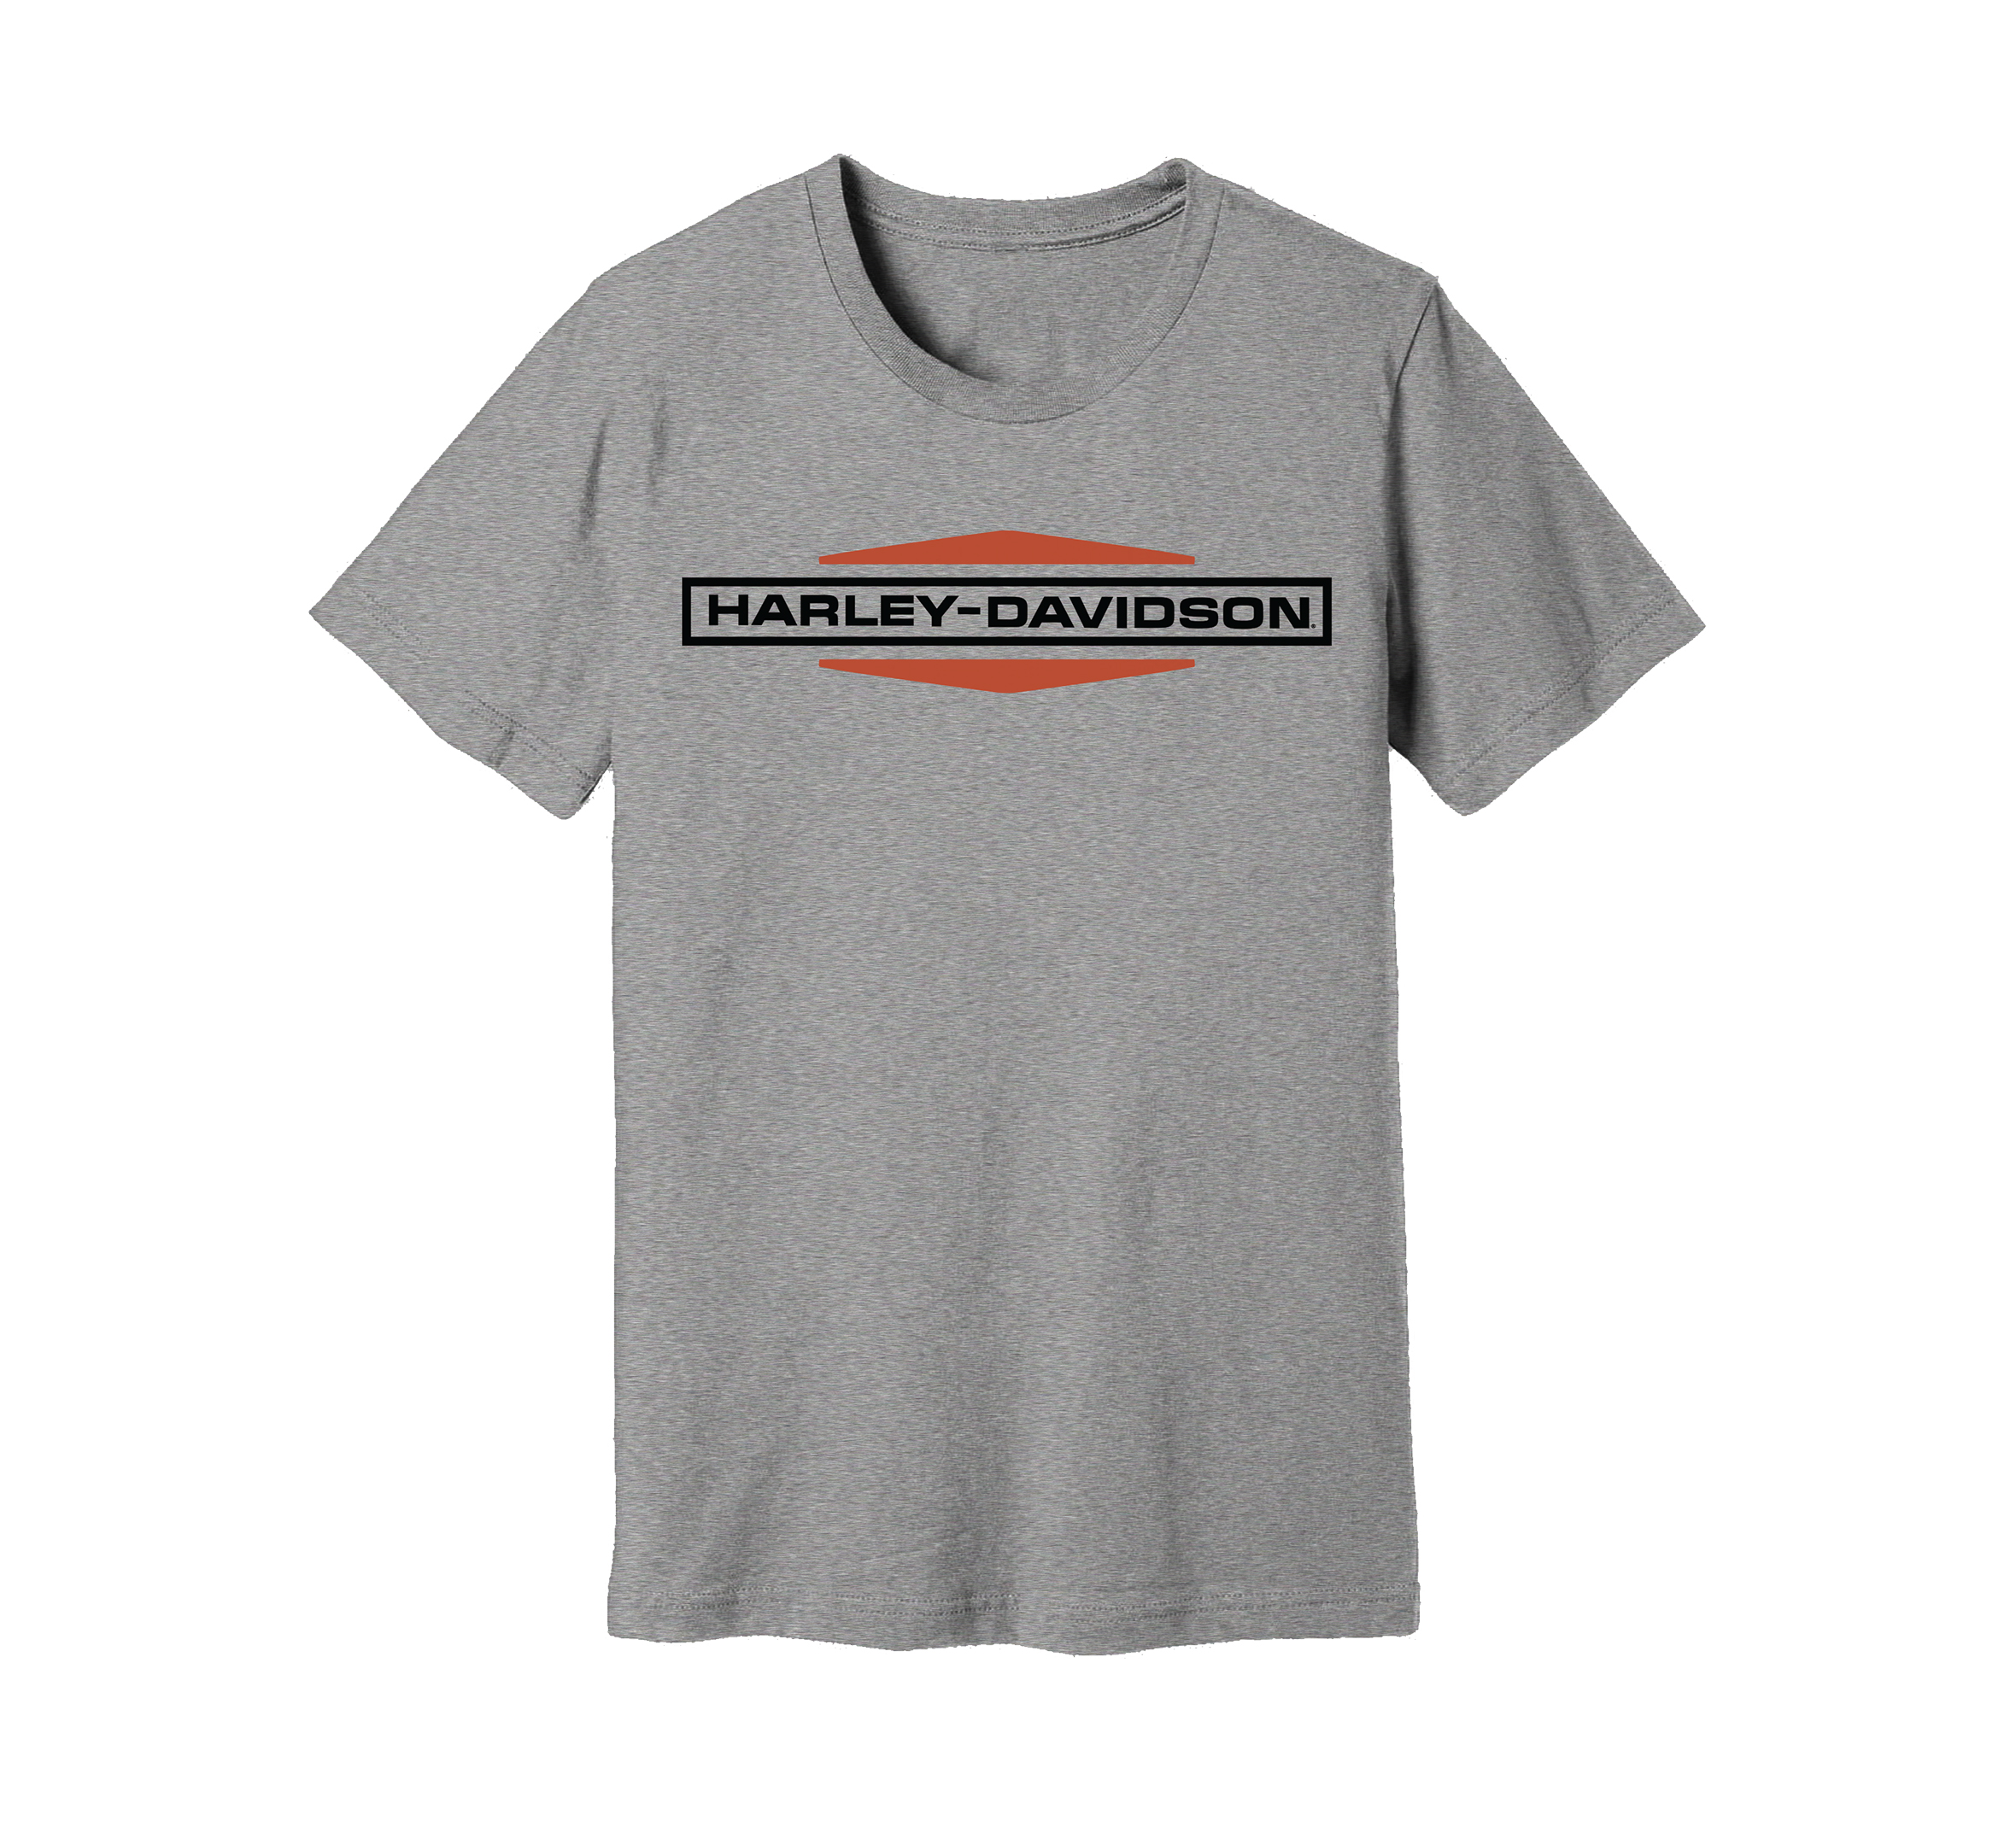 Harley Davidson Mens Freedom Made Short Sleeve T-Shirt Black 402906780